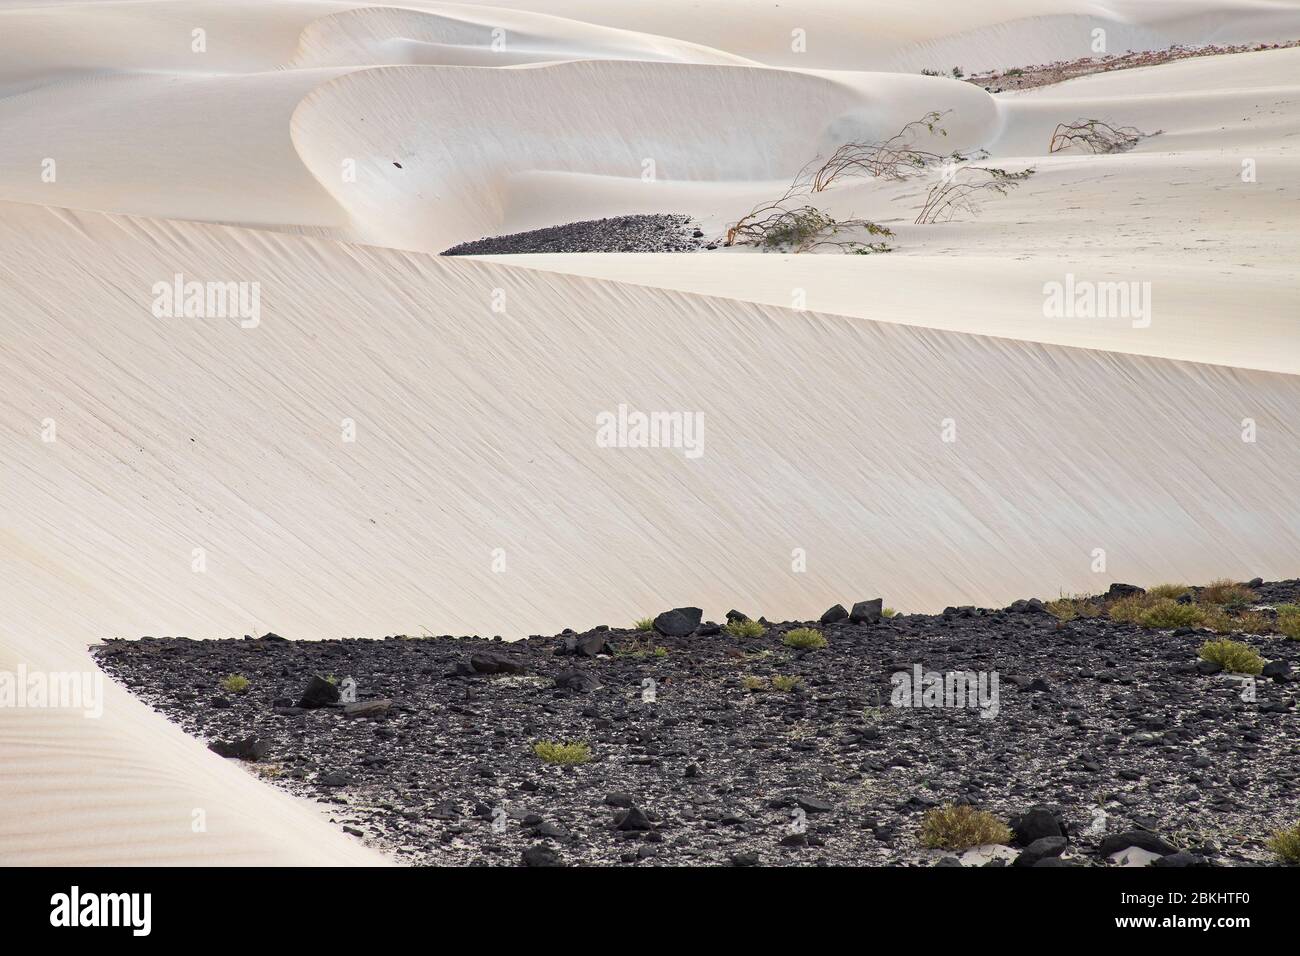 Dünen, die durch den Sand der Sahara und vulkanische Felsen in der Wüste Deserto de Viana auf der Insel Boa Vista, Kap Verde / Cabo Verde gebildet werden Stockfoto